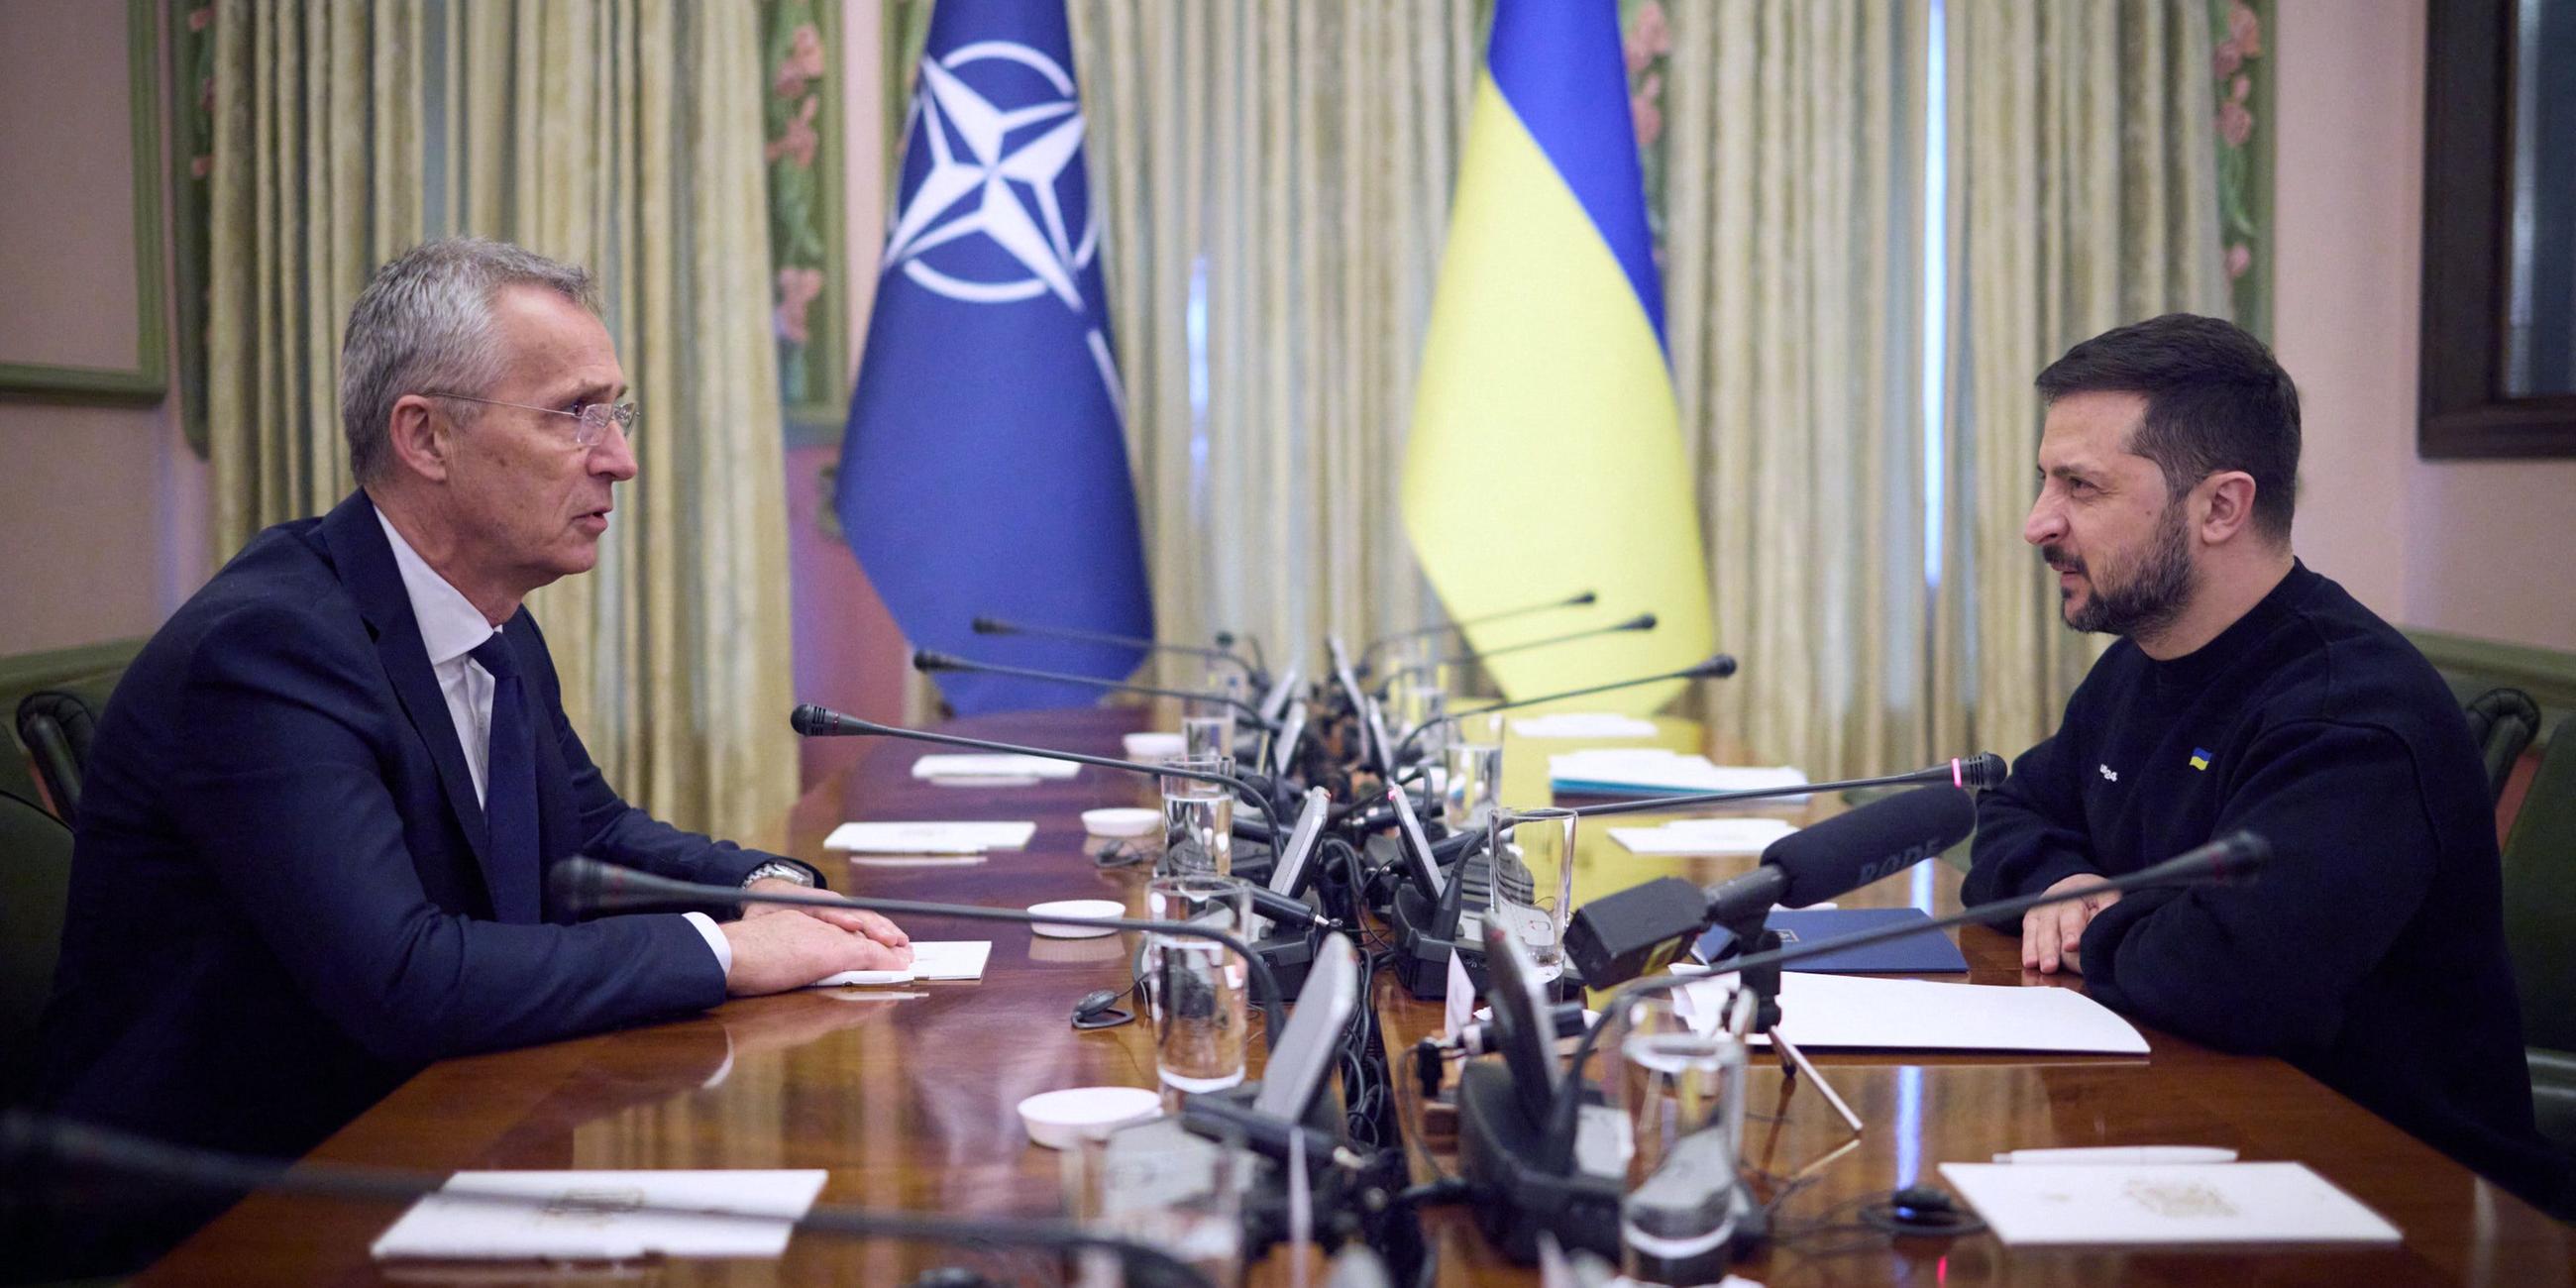 NATO-Generalsekretär Jens Stoltenberg (l.) und den ukrainischen Präsidenten Volodymyr Selenskyj, die während ihres Treffens in Kiew, Ukraine